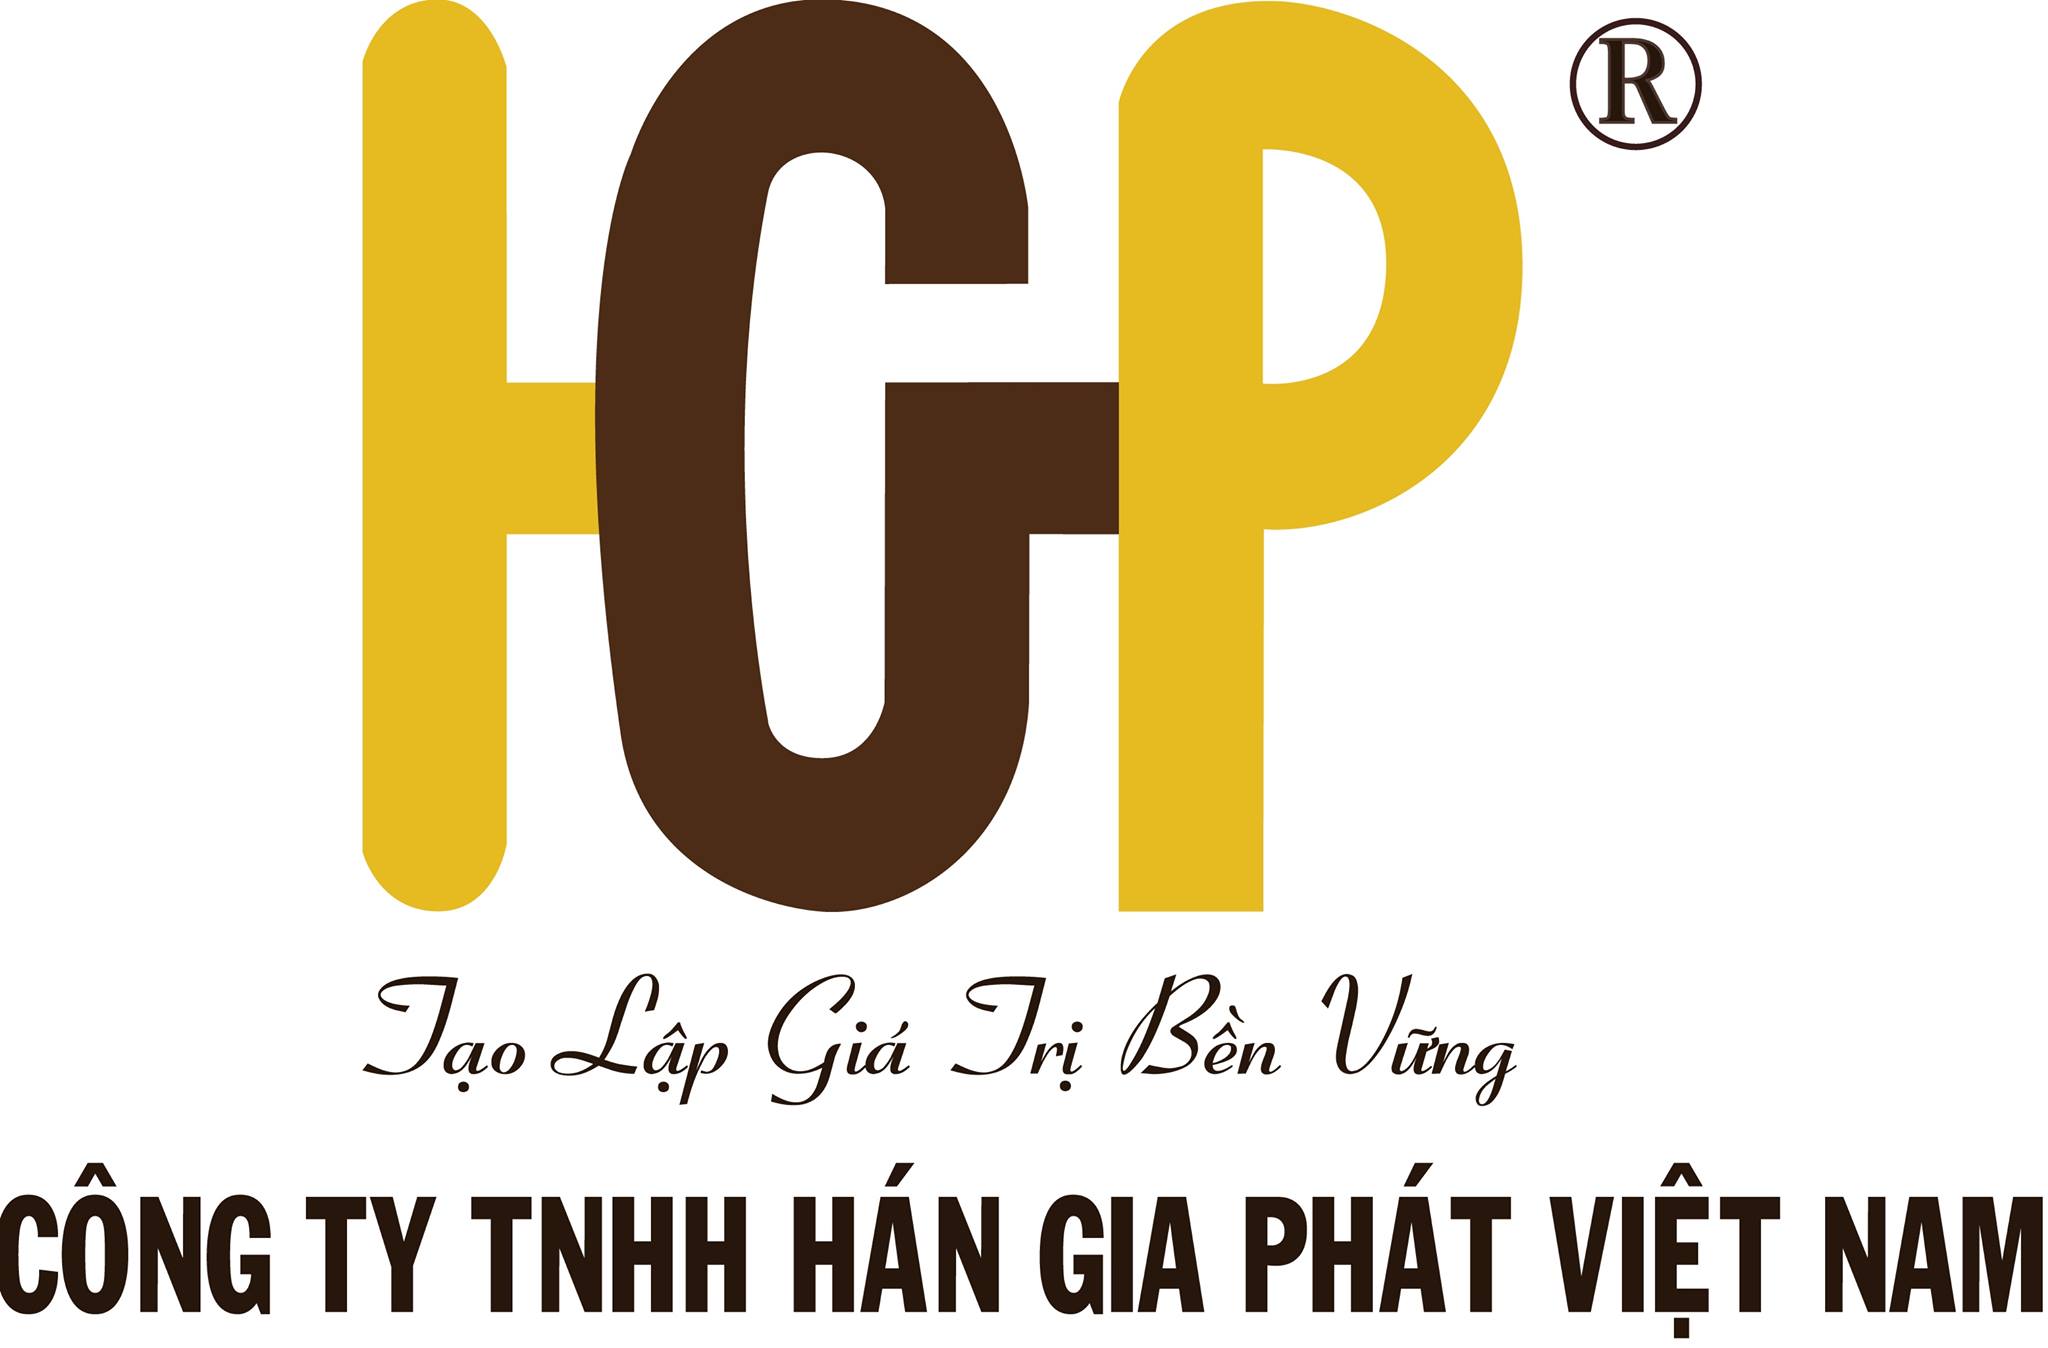 Công ty TNHH Hán Gia Phát Việt Nam